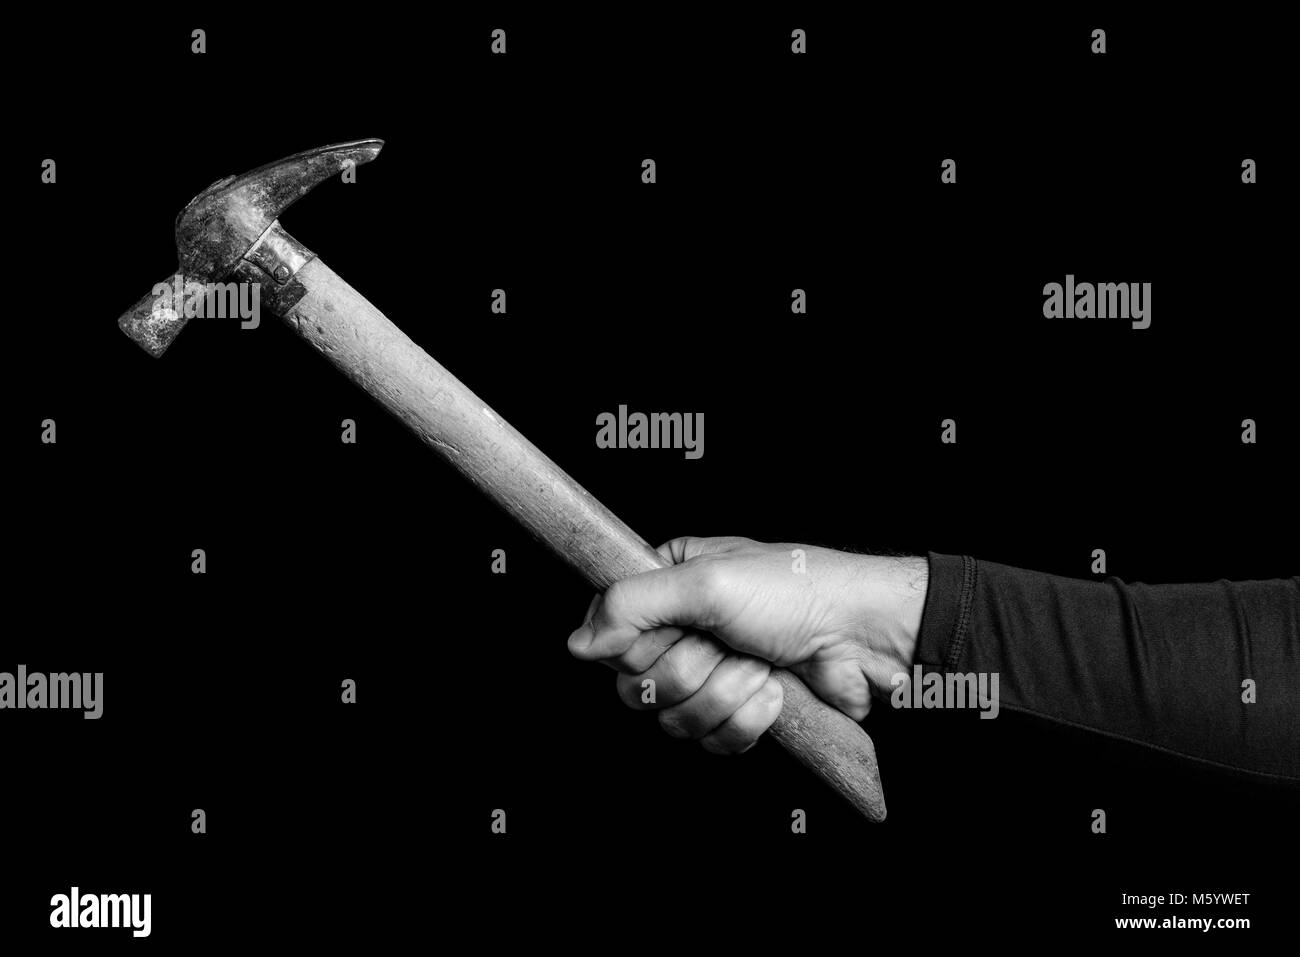 Marteau maçon- outils dans la main d'un homme - noir et blanc photo Banque D'Images